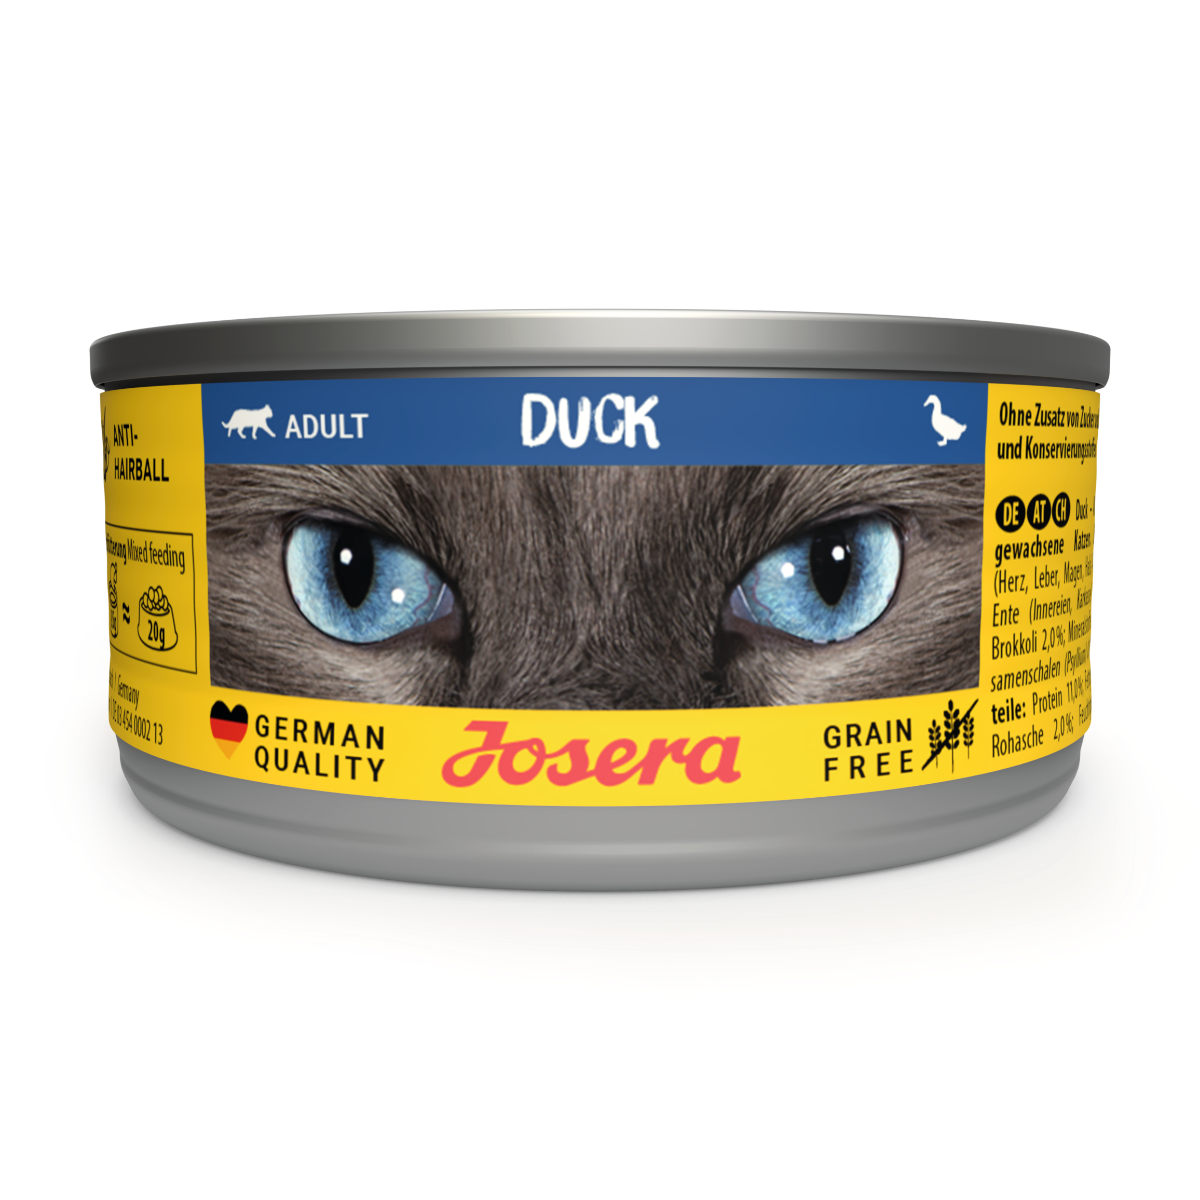 Josera Nassfutter Duck - Ente gut, alles gut – jetzt gibt’s unser Nassfutter mit leckerer Ente in der praktischen Dose 12x85g